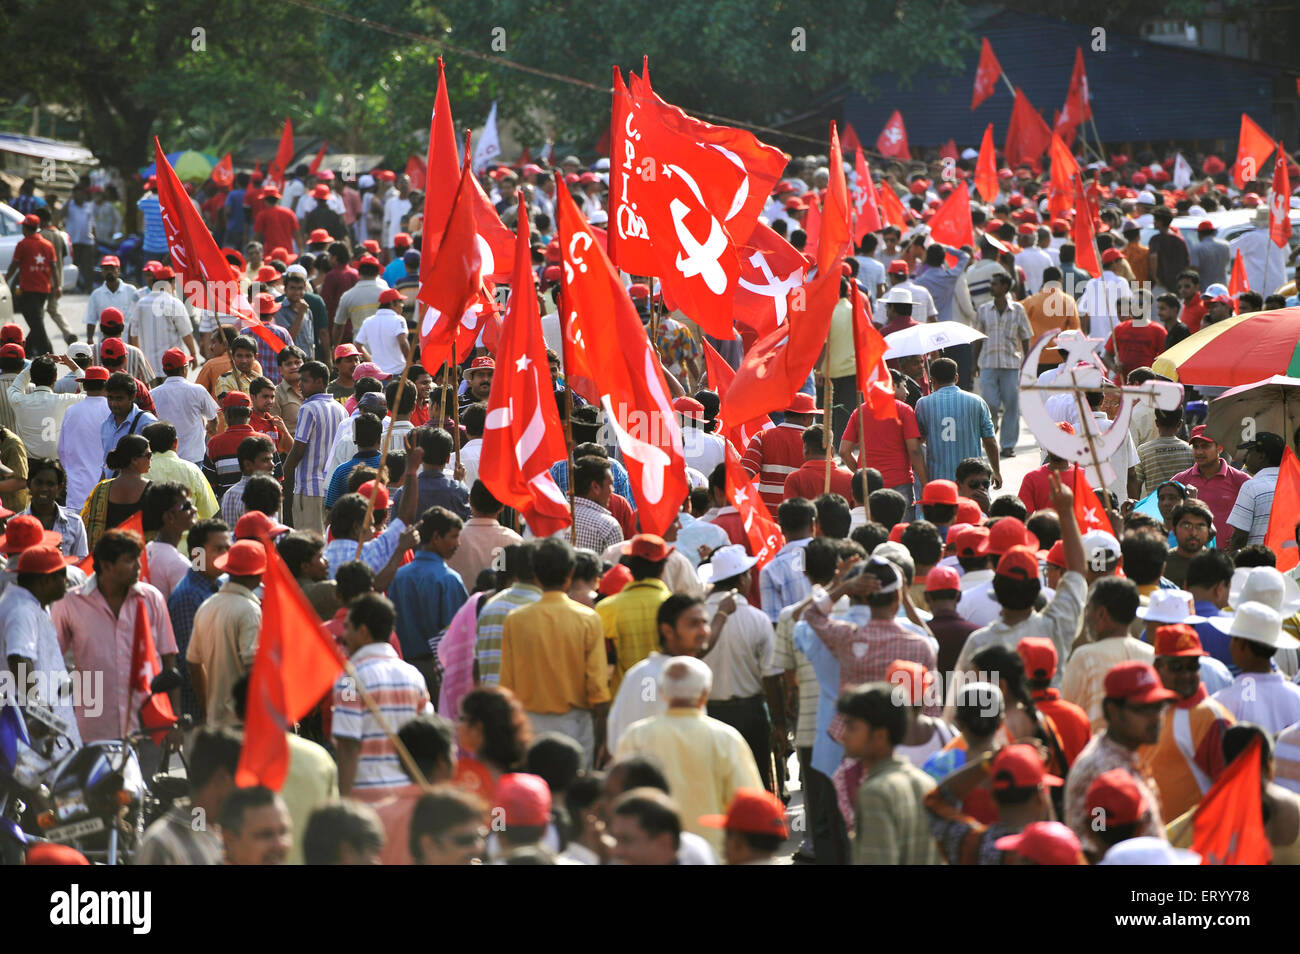 CPM, partito comunista dell'India, marxista, partito politico, campagna elettorale rally con simboli di bandiere di partito, Calcutta, Kolkata, Bengala occidentale, India, Asia Foto Stock